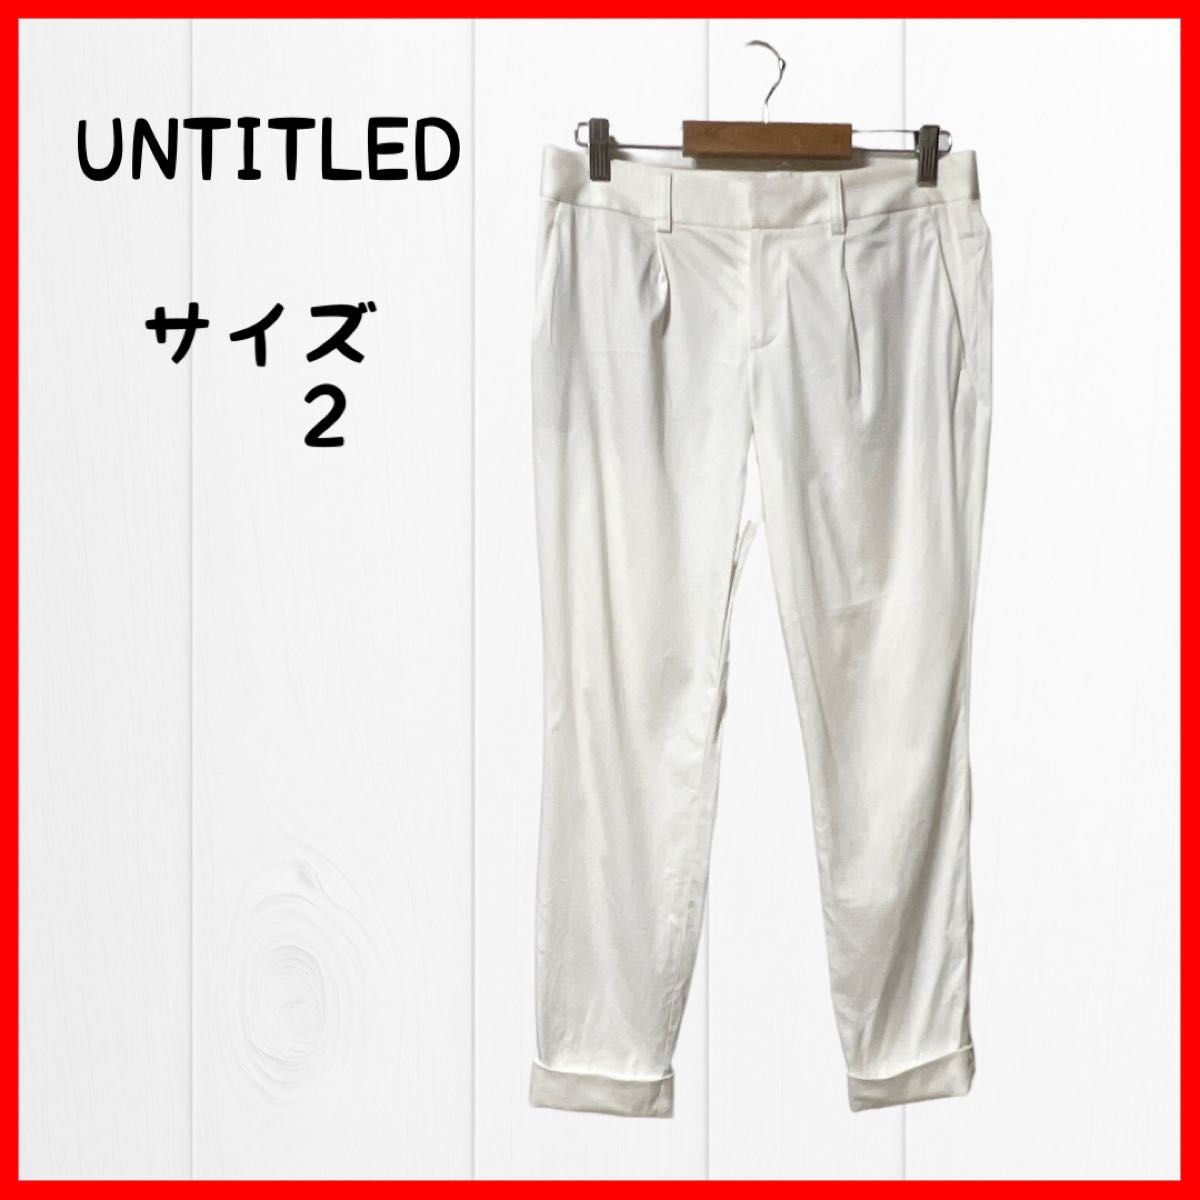 UNTITLED アンタイトル レディース パンツ サイズ2 Mサイズオフホワイト